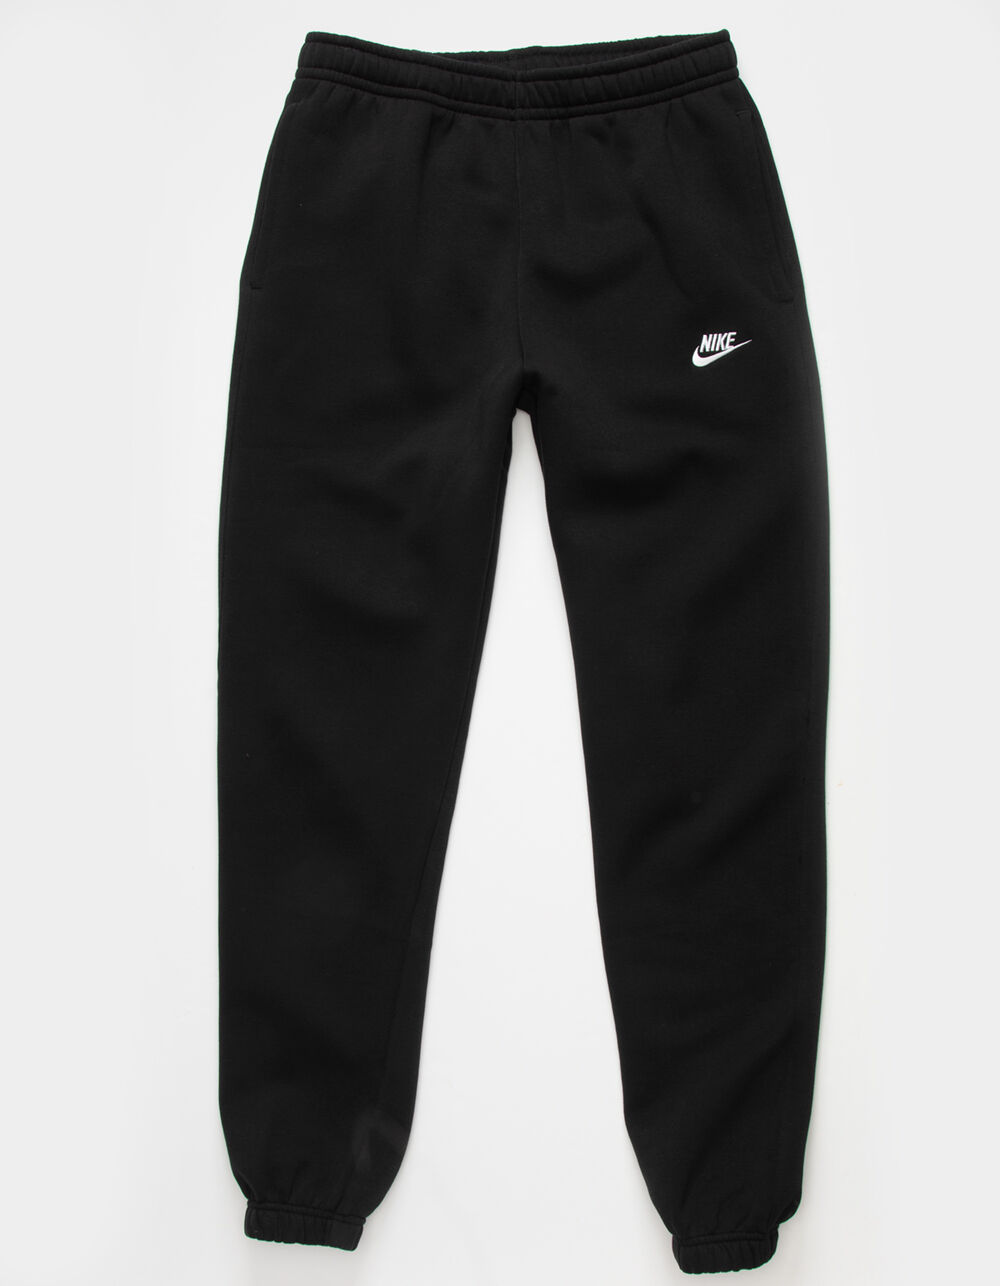 NIKE Sportswear Club Fleece Mens Sweatpants - BLACK, Tillys